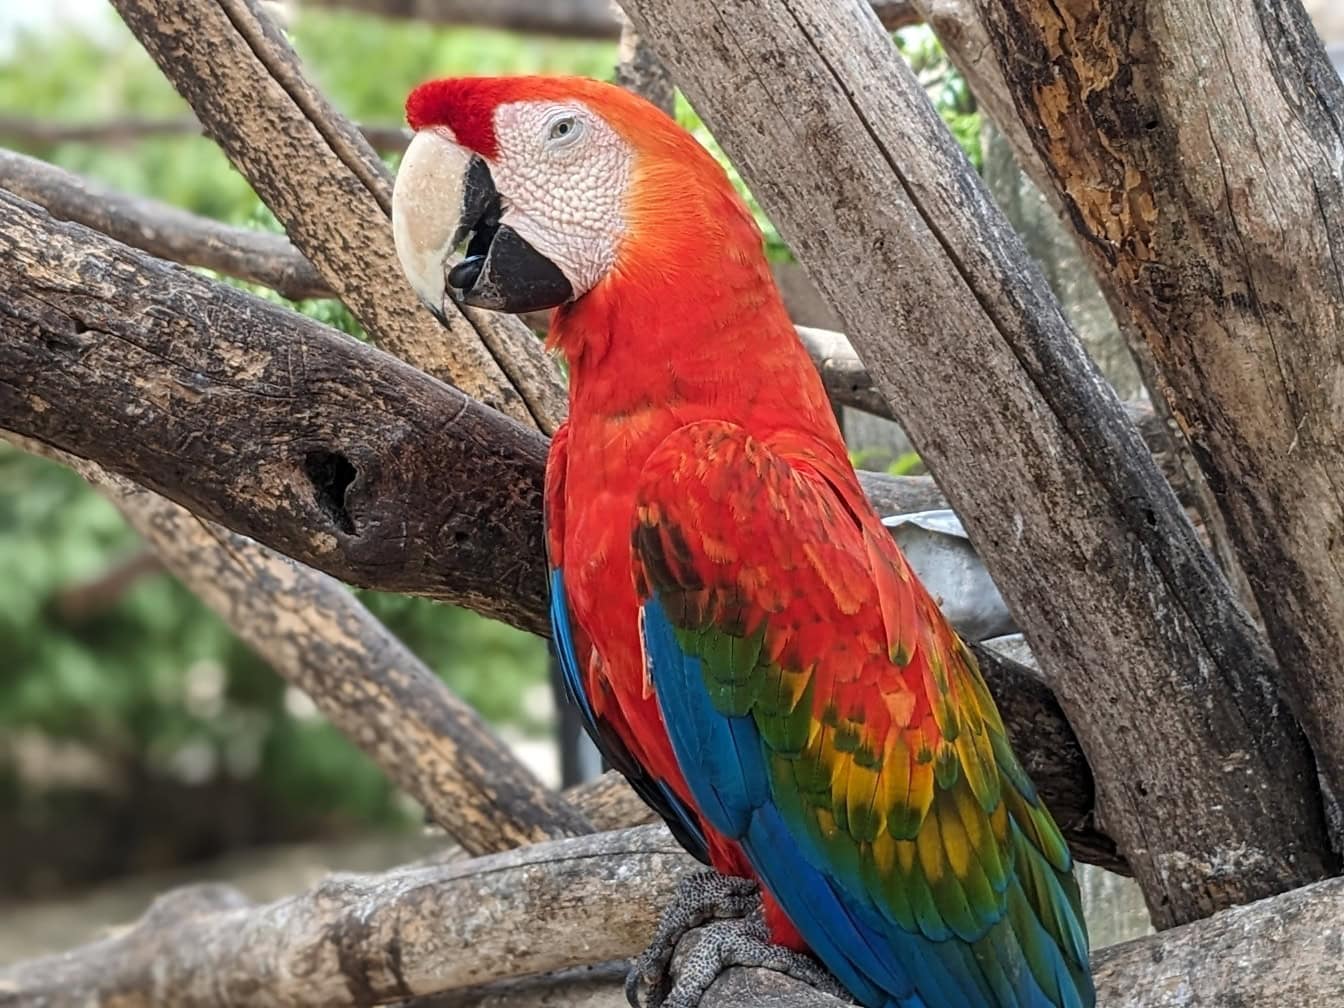 Il pappagallo ara scarlatto su un ramo d’albero (Ara macao) un grande pappagallo esotico neotropicale originario delle foreste pluviali delle Americhe